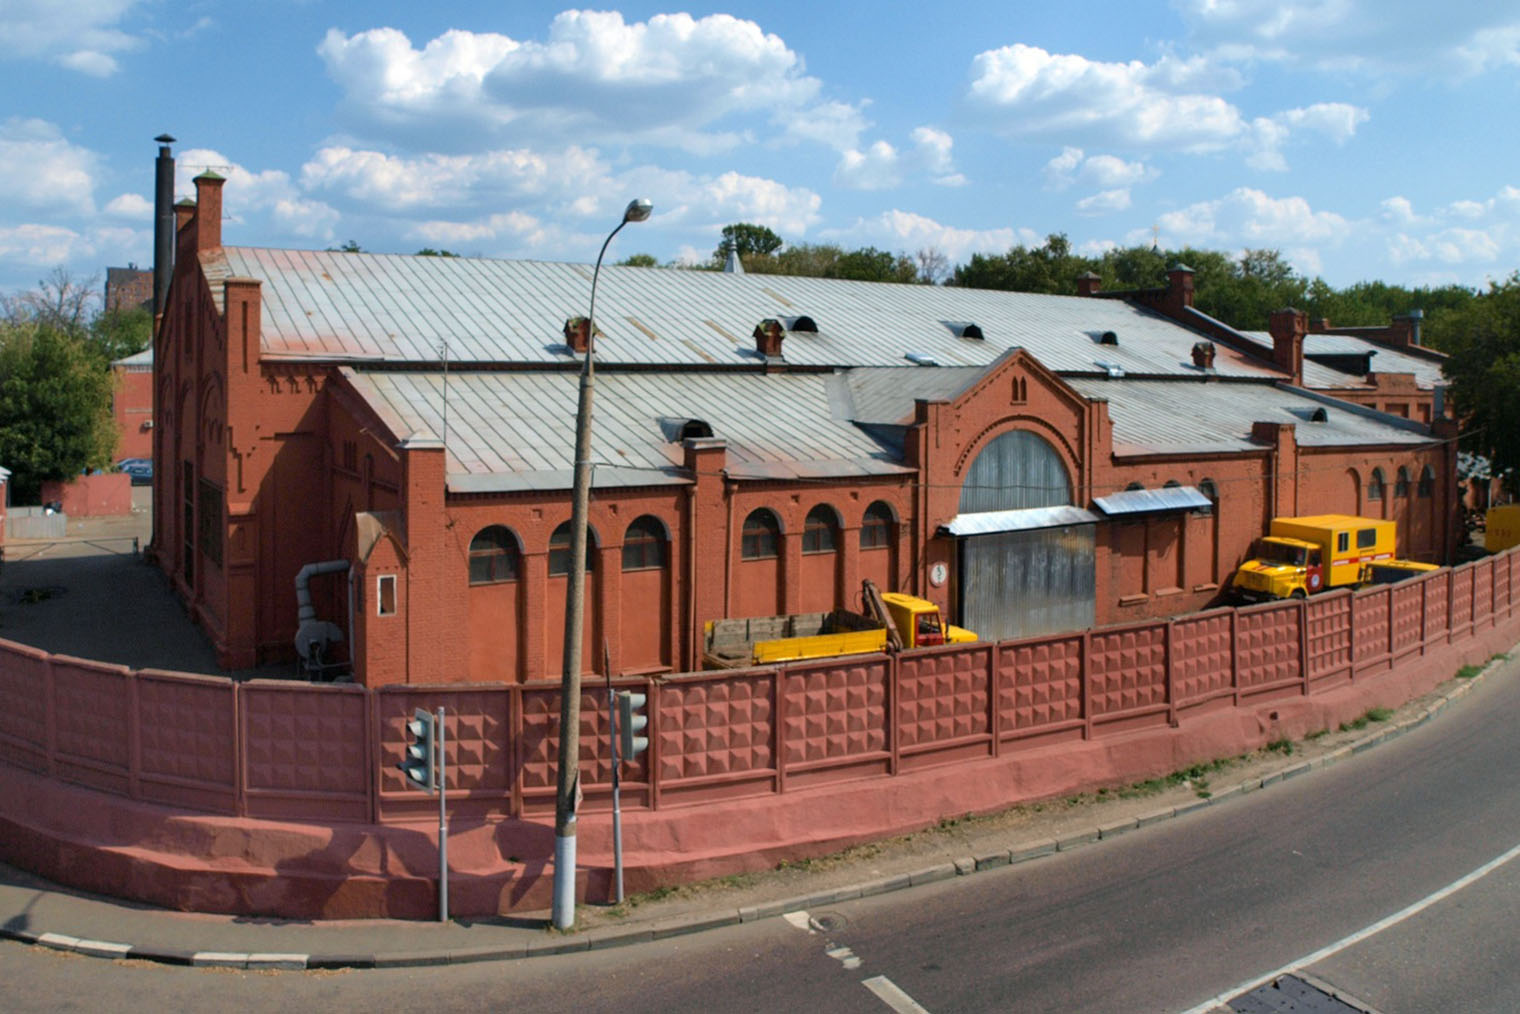 Здание бывшей насосной станции — памятник промышленной архитектуры 19 века. Фотография: NVO / Wikipedia